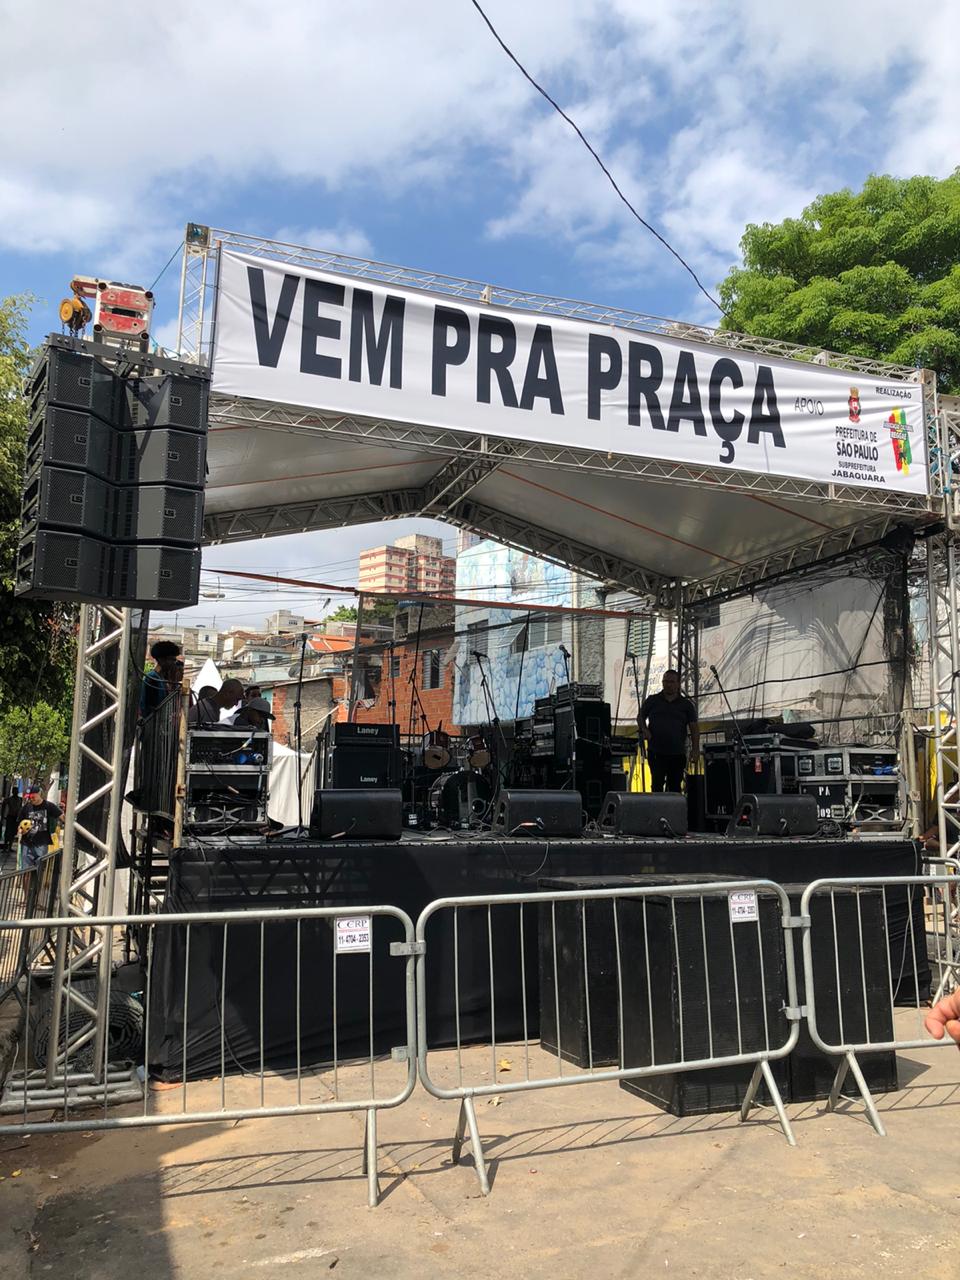 Imagem do palco do coopera com uma faixa escrito "VEM PRA PRAÇA" 